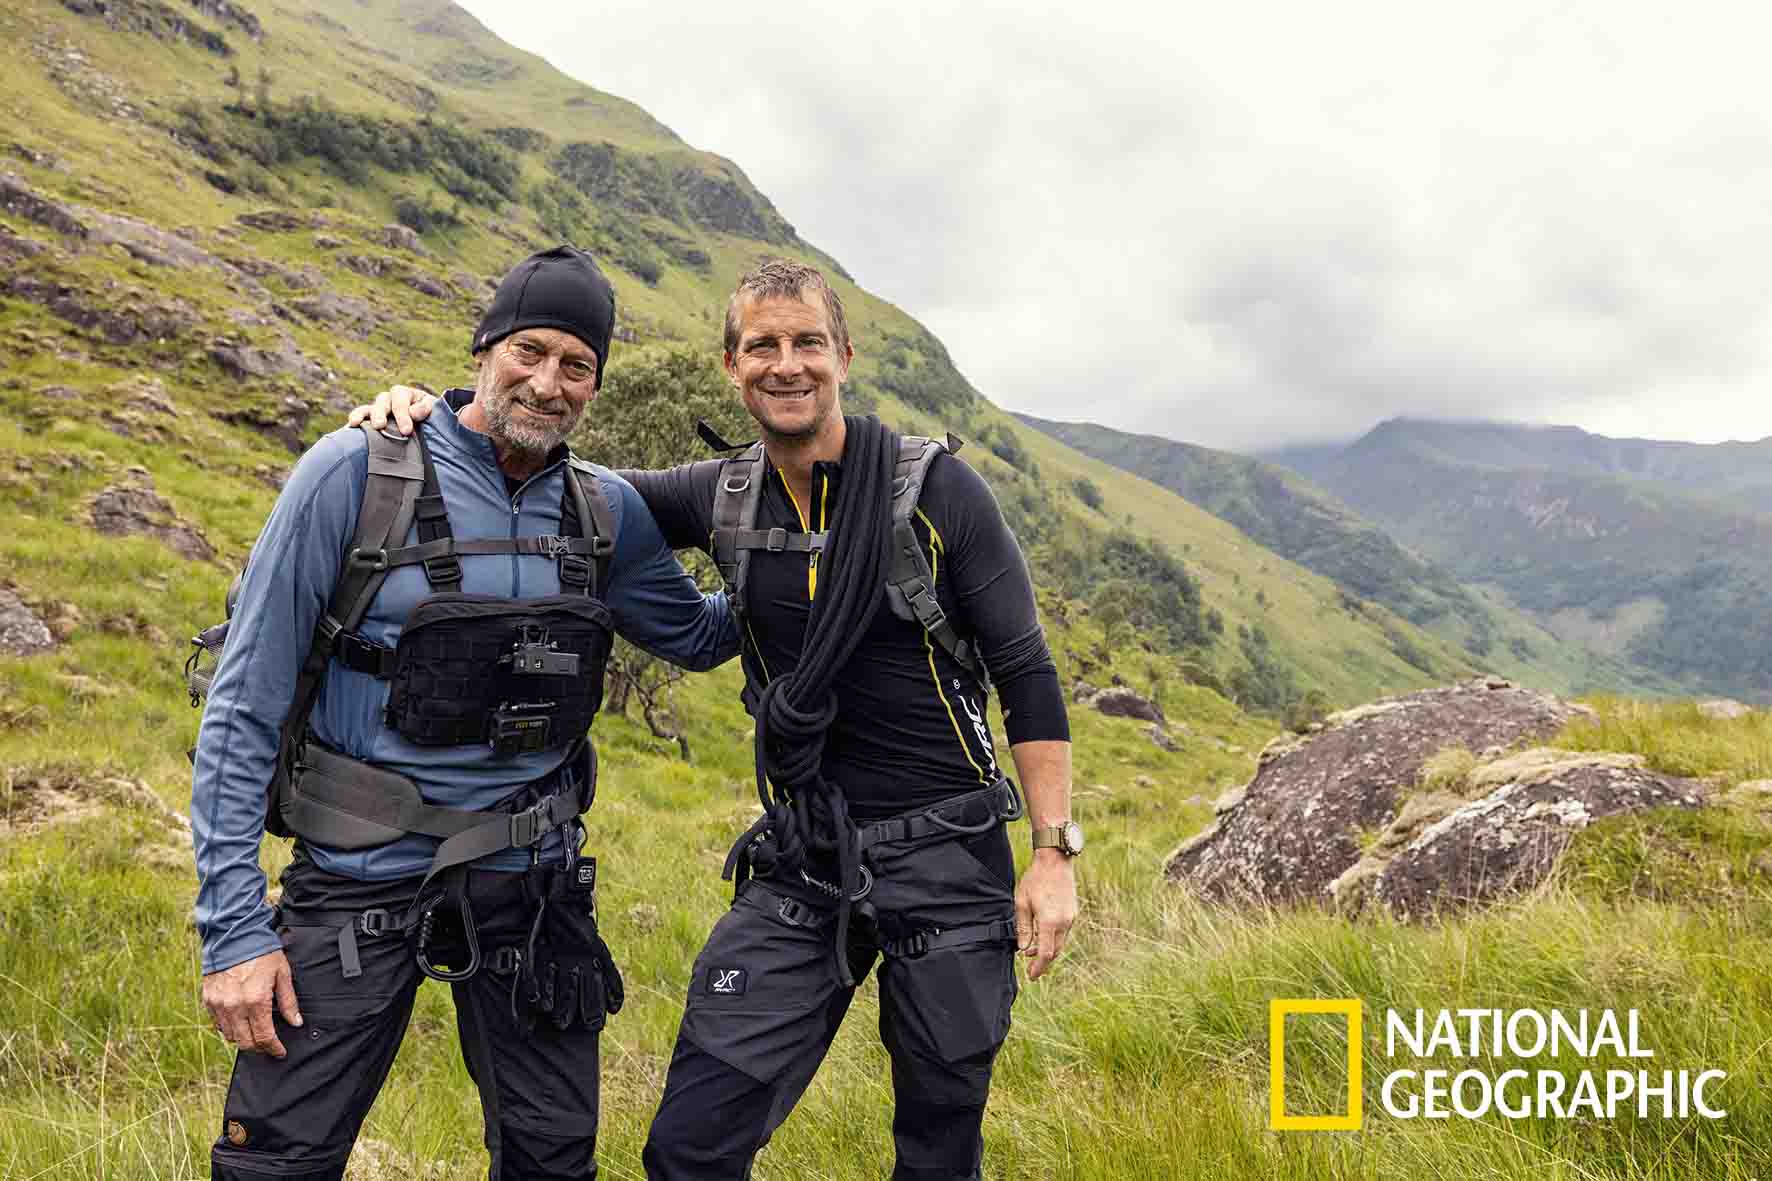 Αποστολή Επιβίωσης με τον Μπέαρ Γκριλς: Ο νέος κύκλος της σειράς αποκλειστικά στο National Geographic